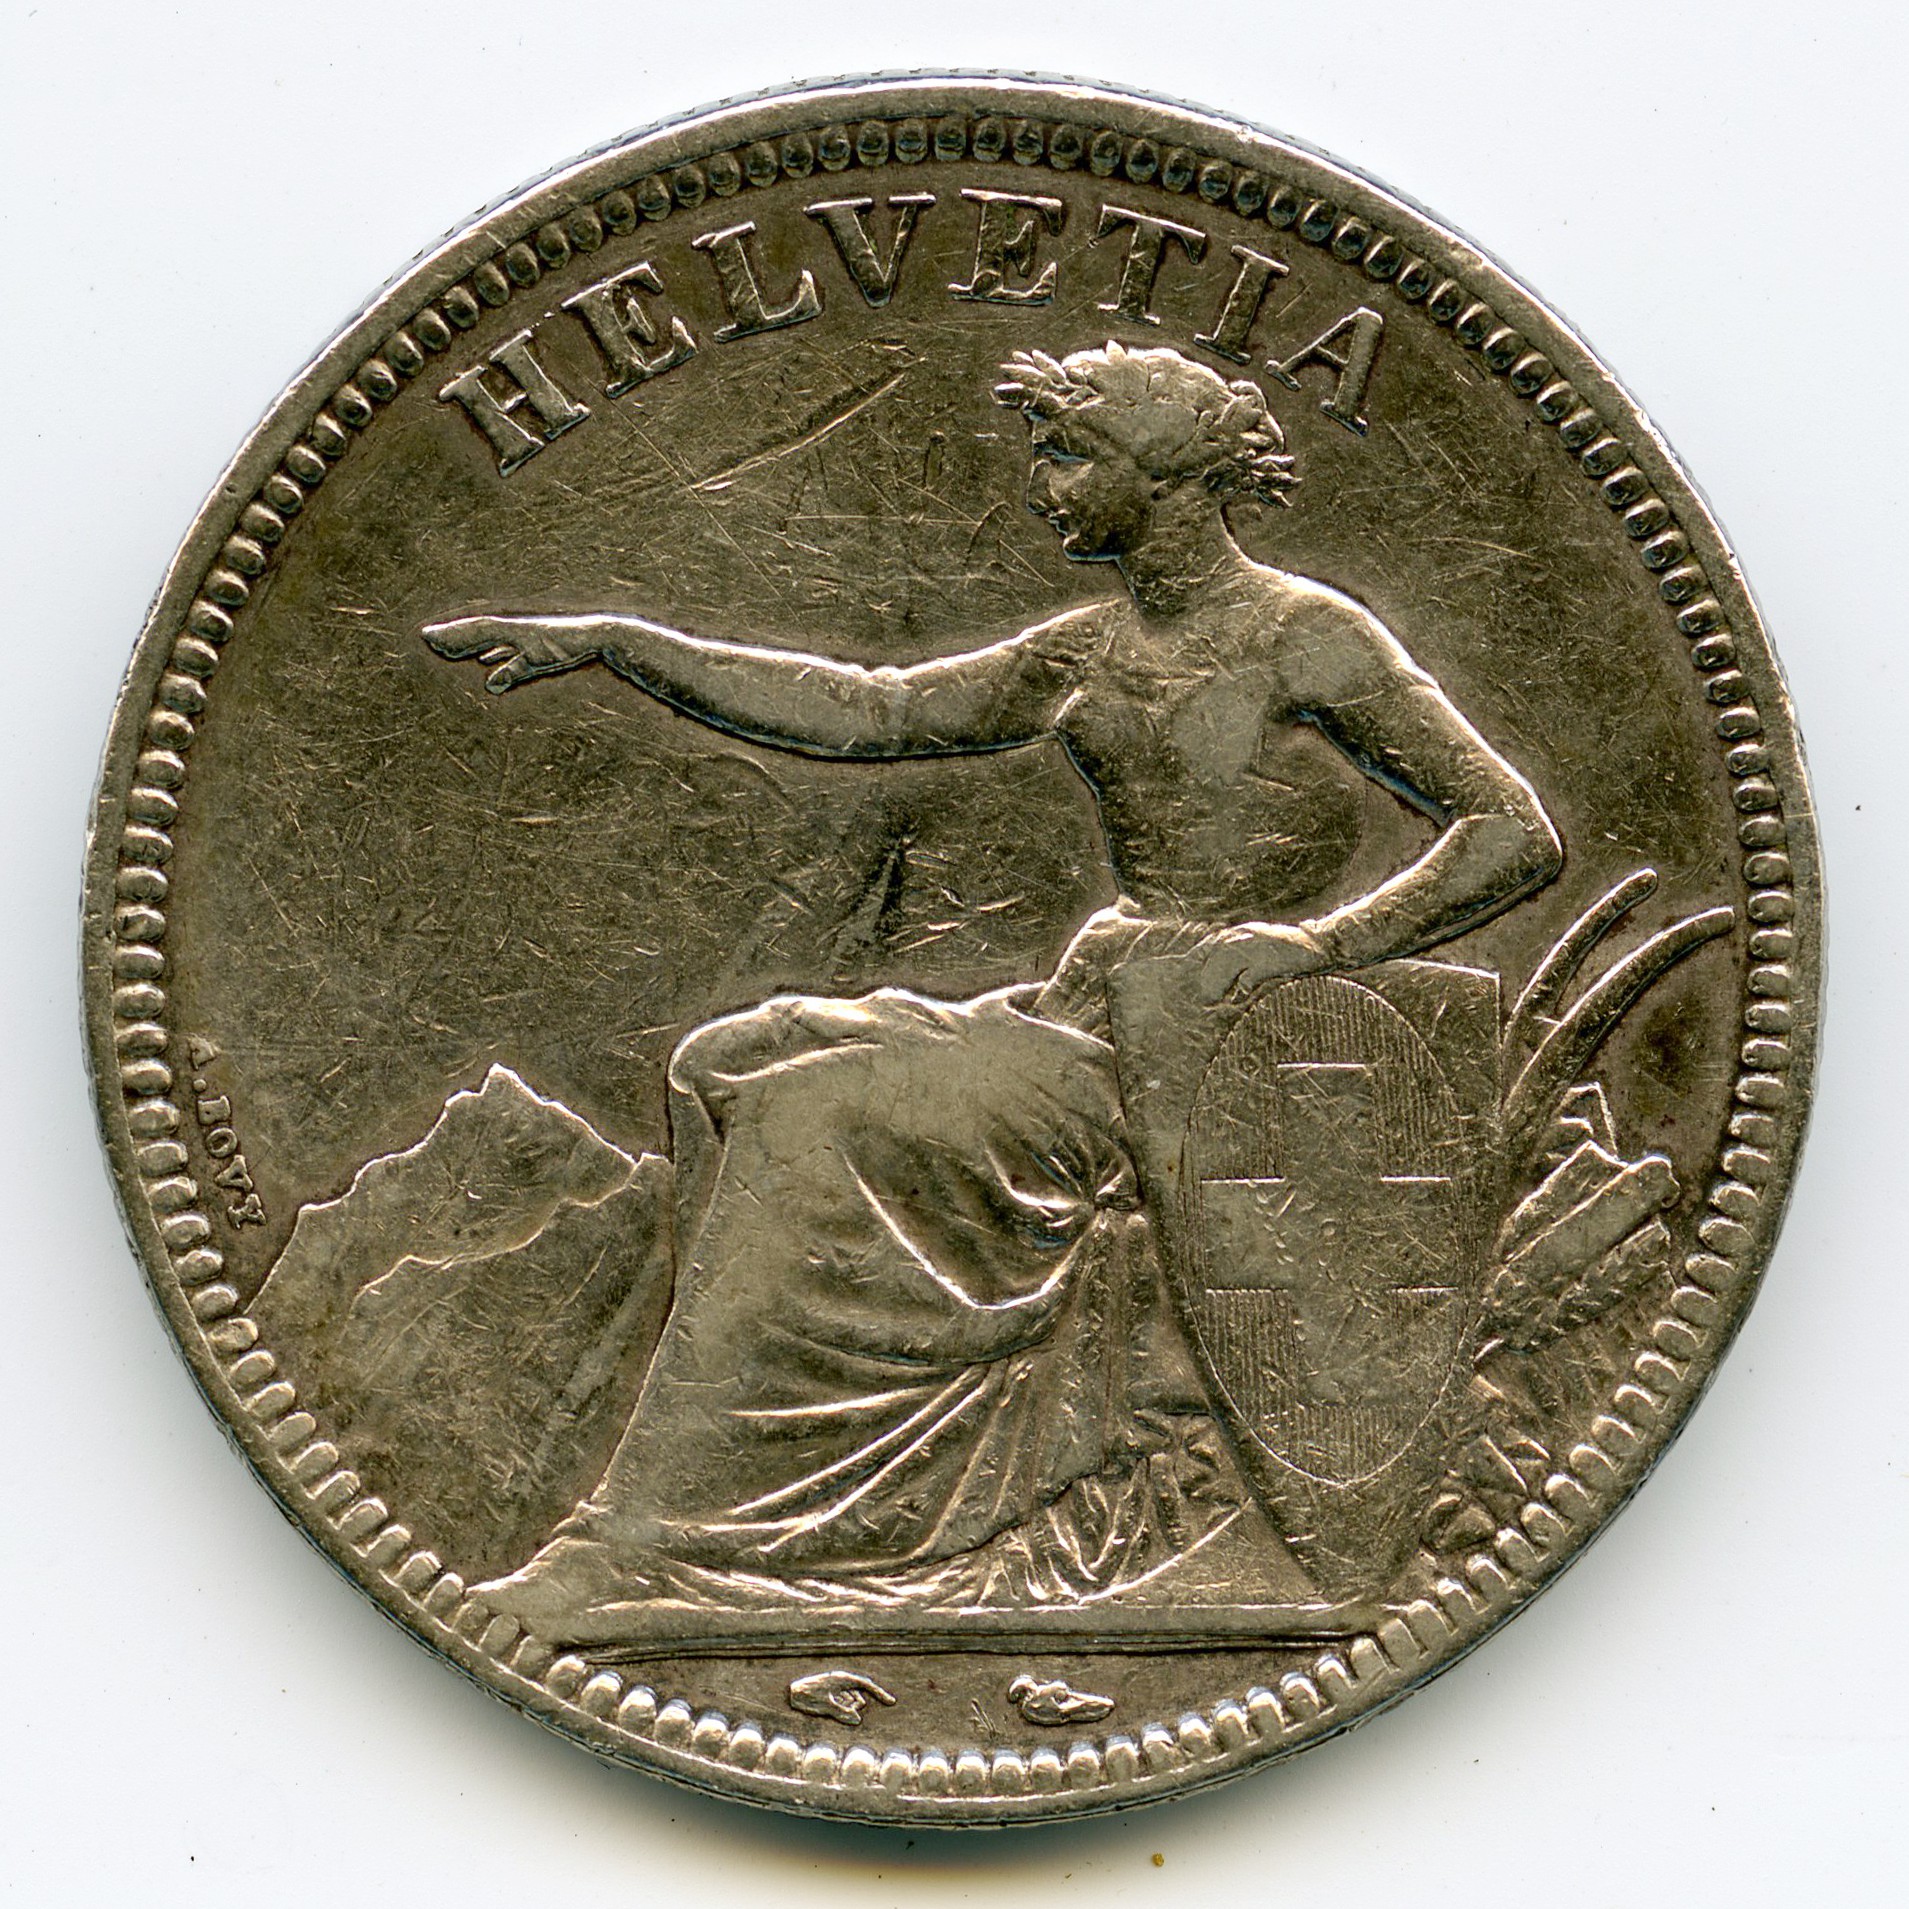 Suisse - 5 Francs - 1850 A avers